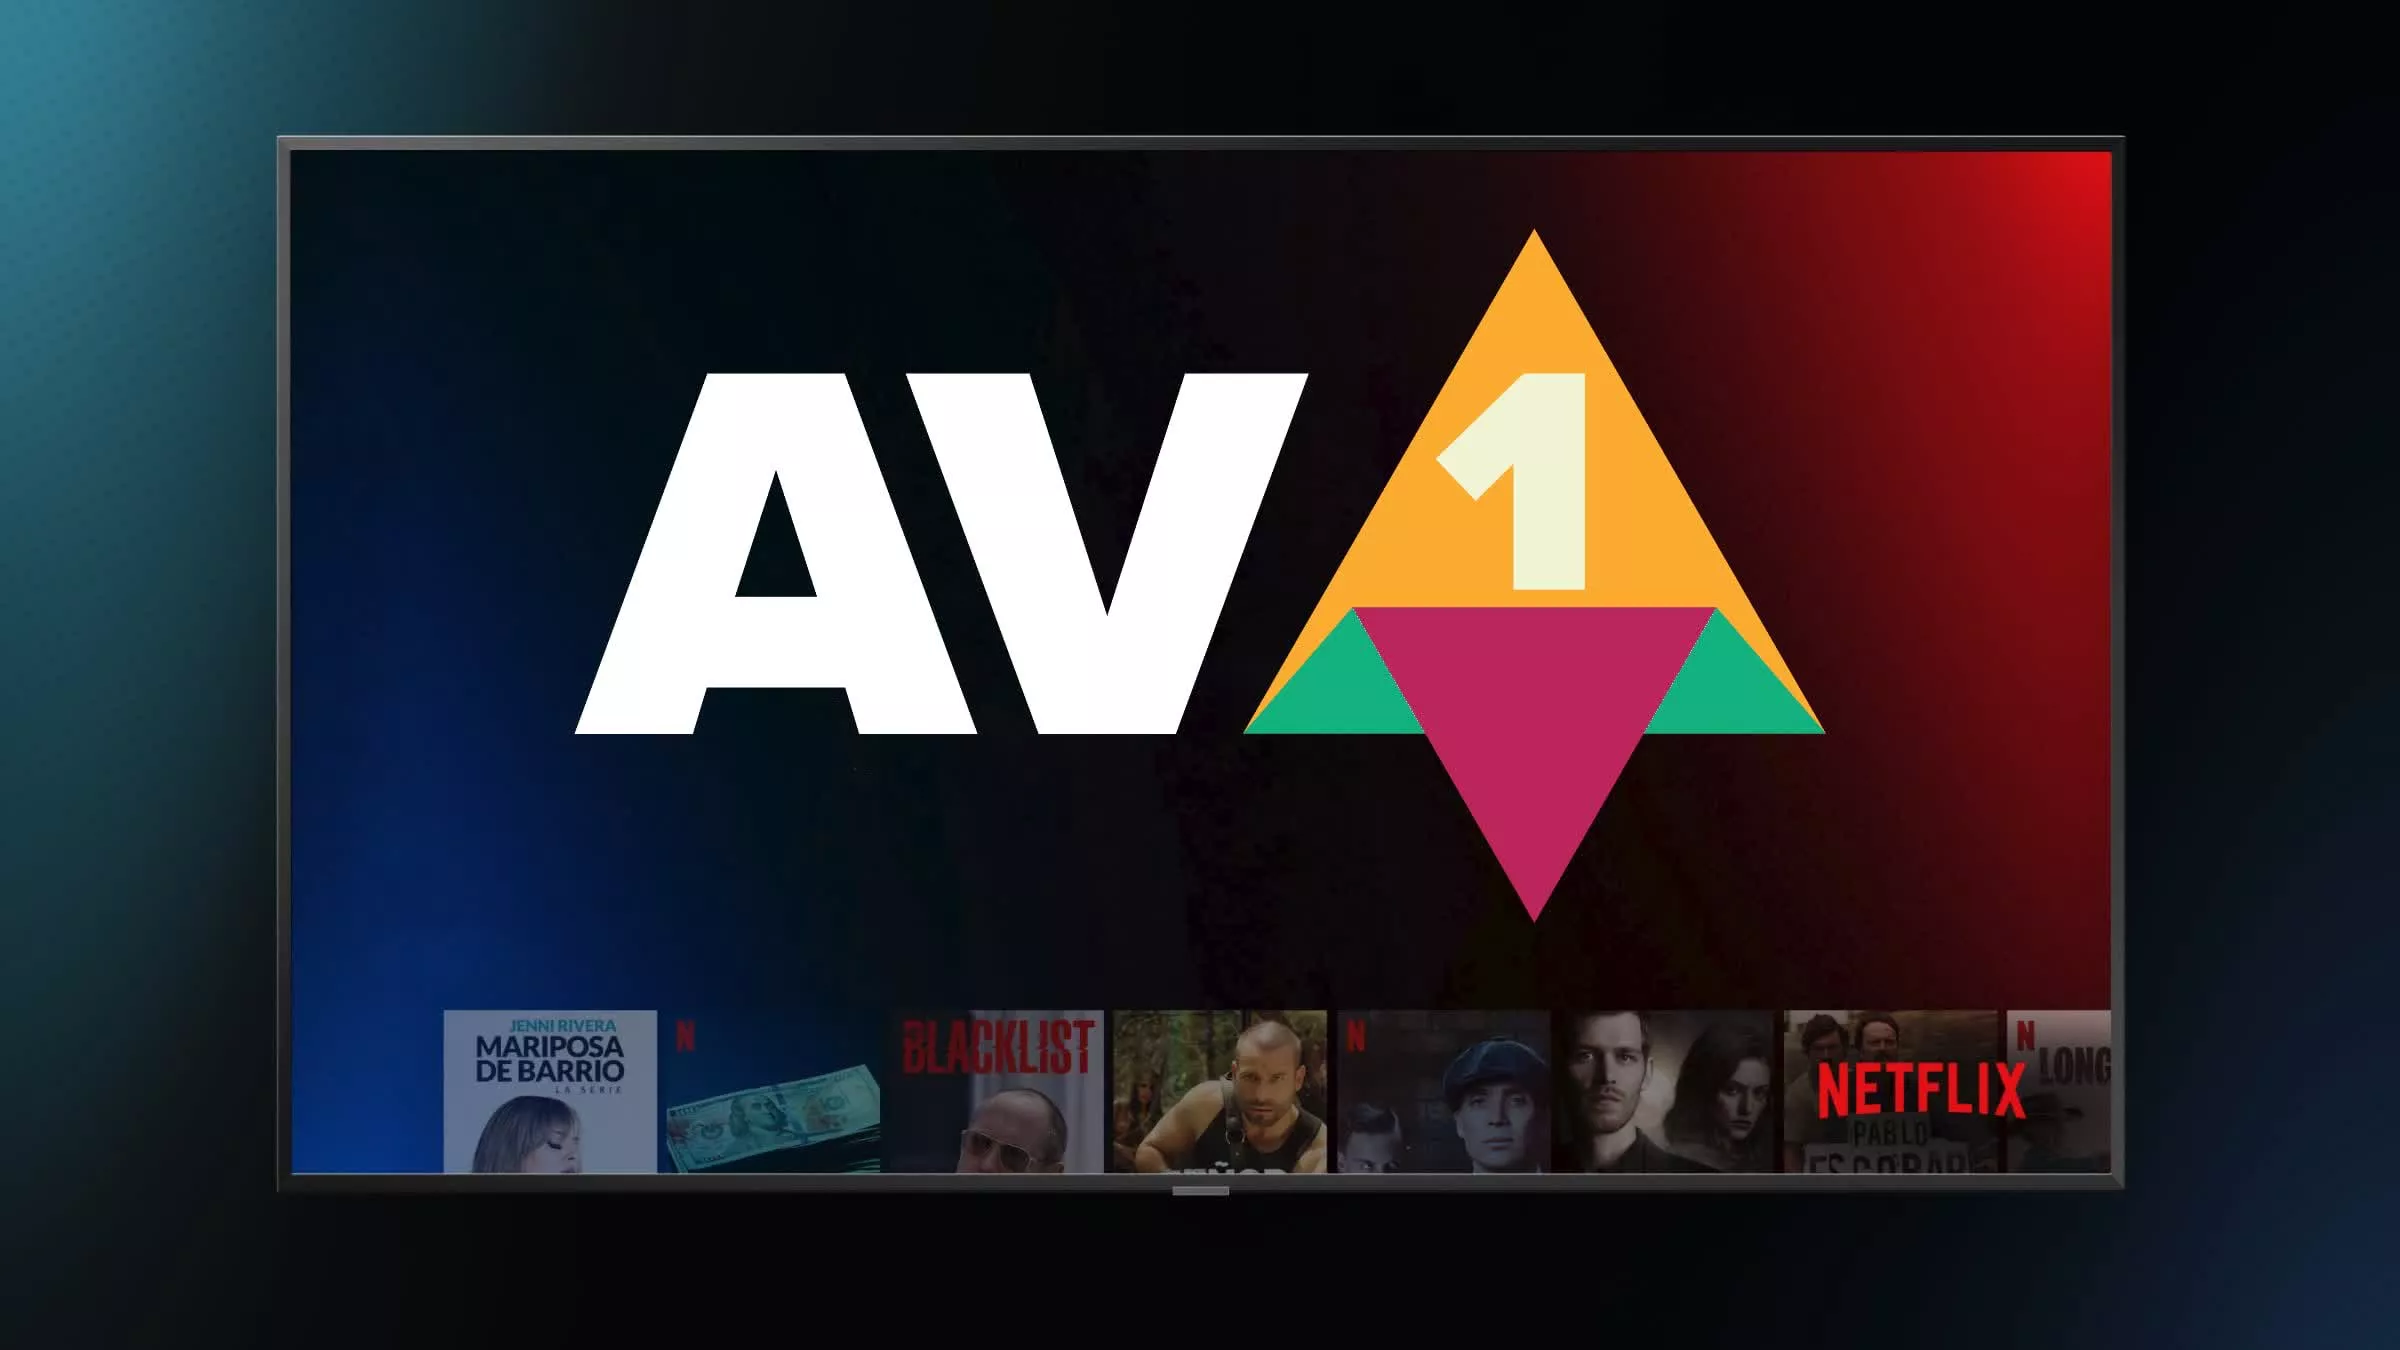 El nuevo descodificador de software AV1 que llega a Android promete una experiencia de vídeo mejorada